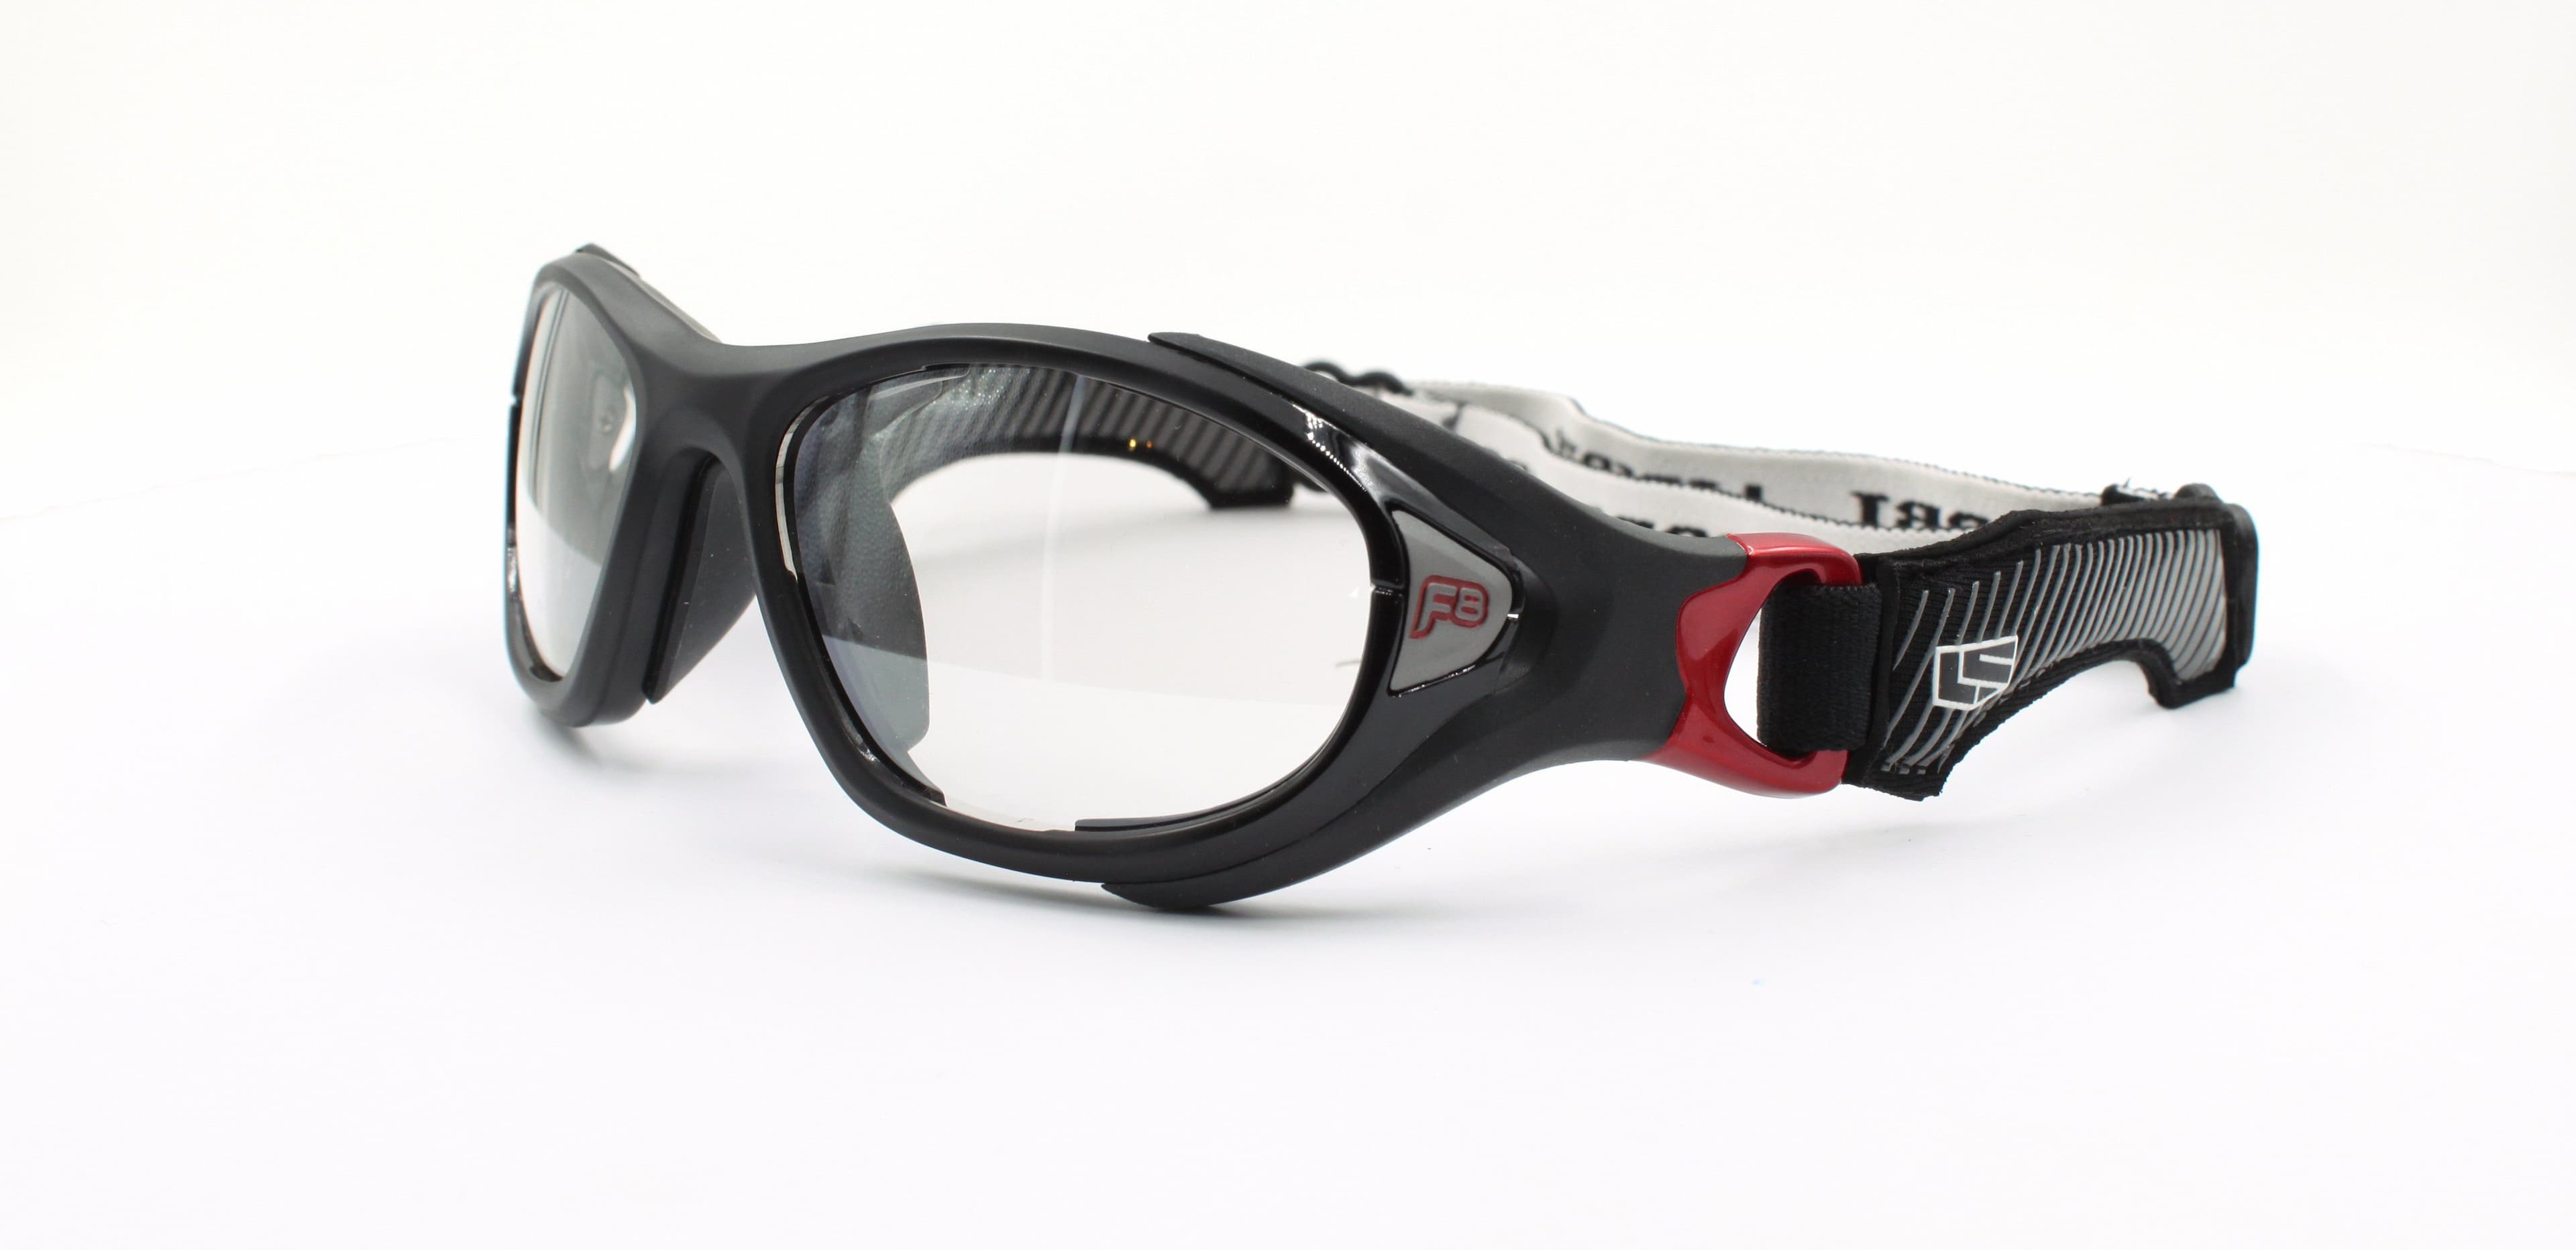 LS Rec-Specs F8 Helmet Spex XL ASTM Sports Glasses